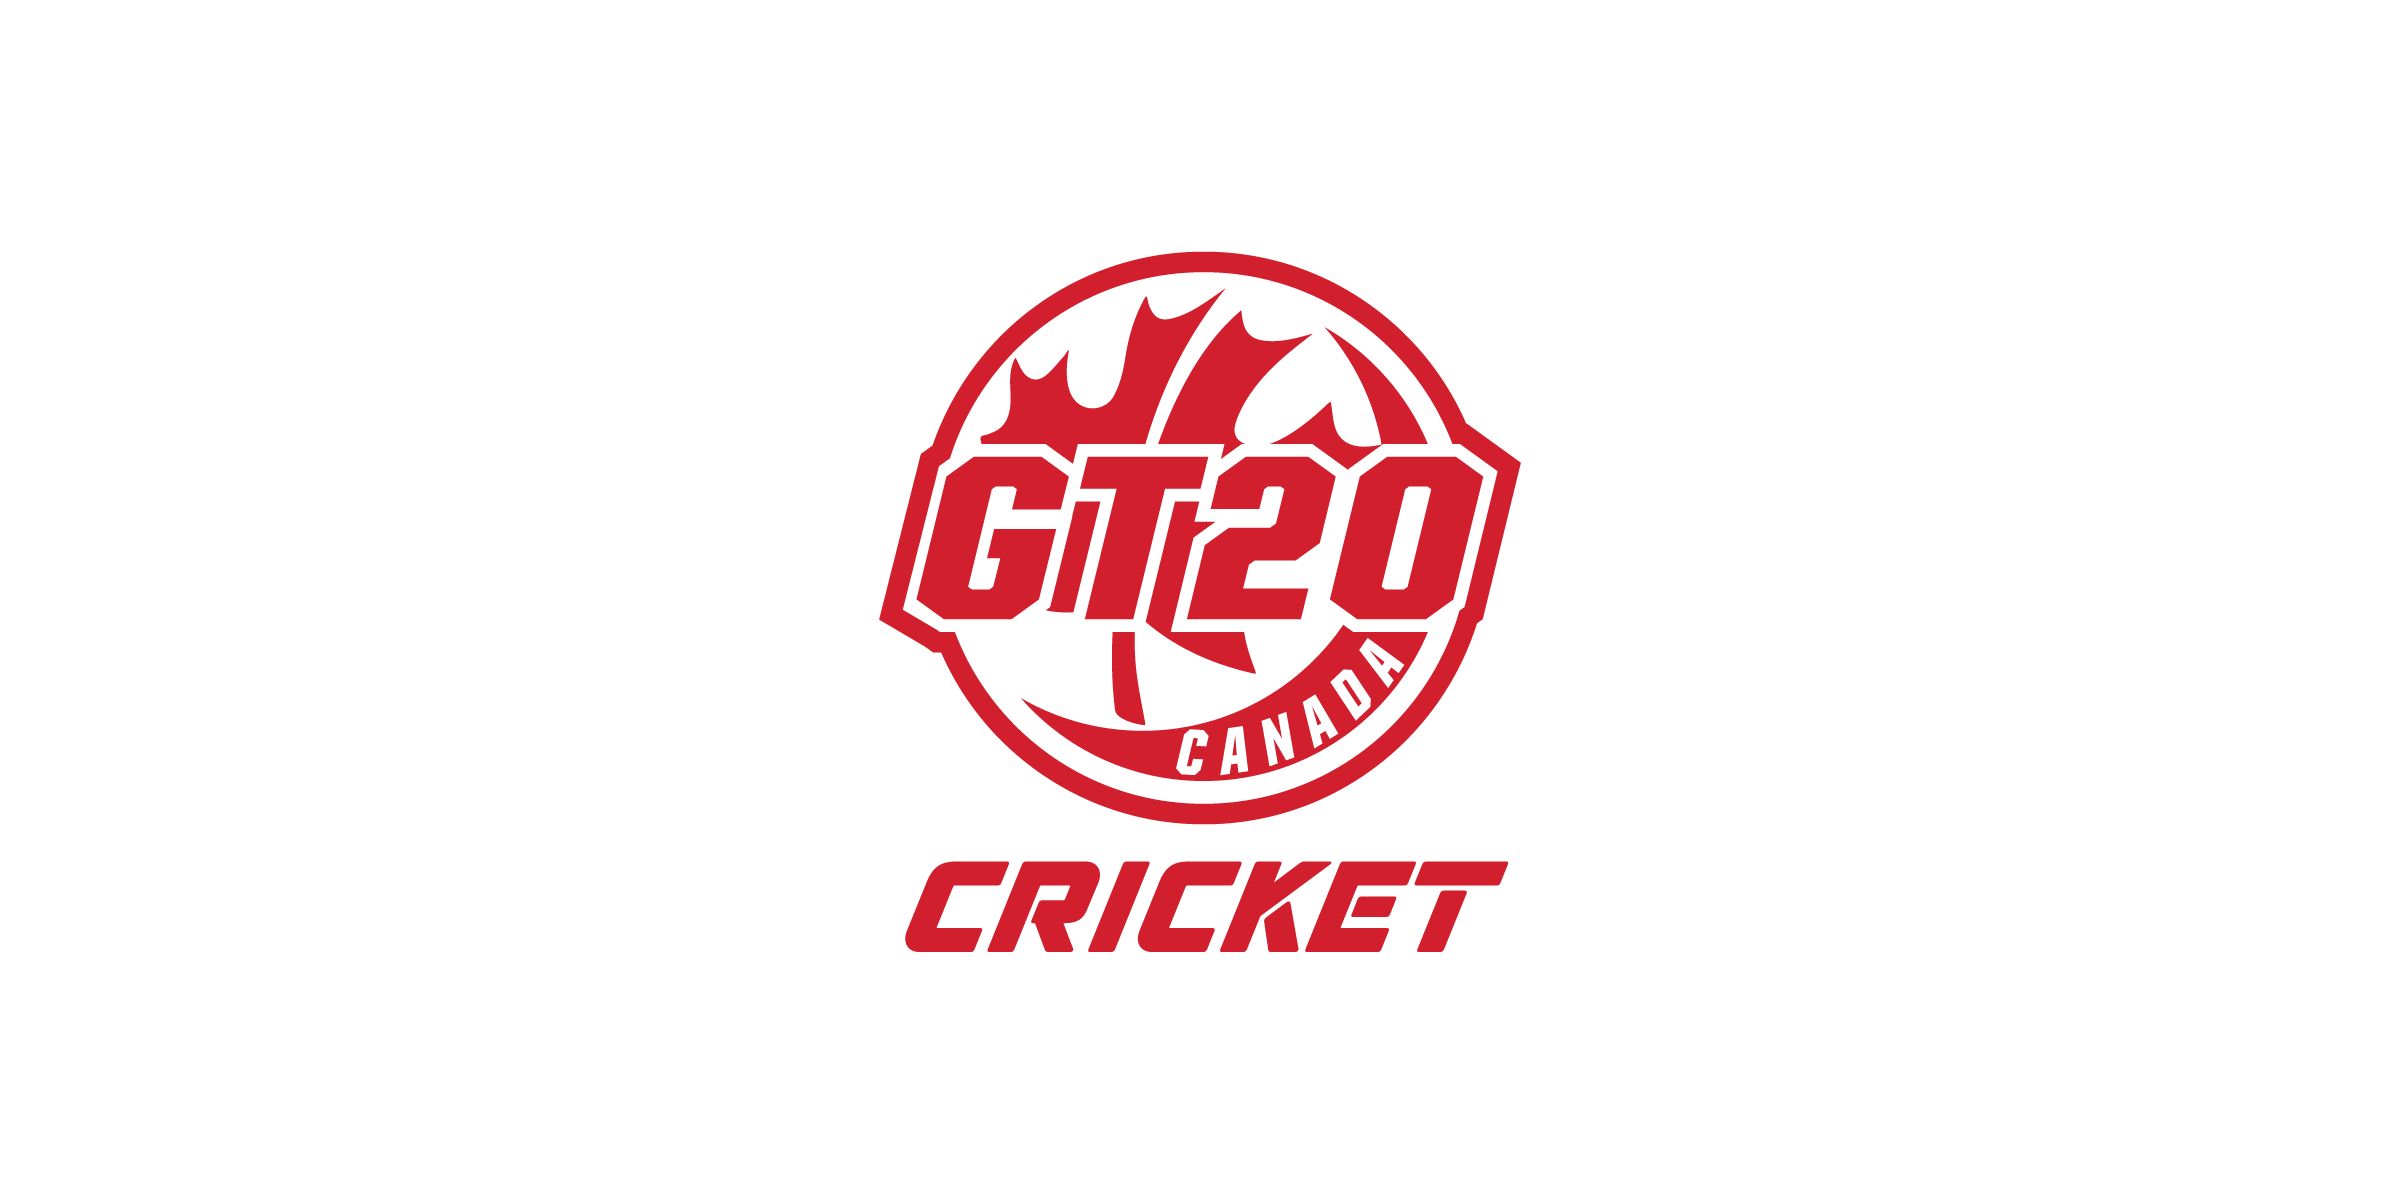 GT20 Cricket Canada